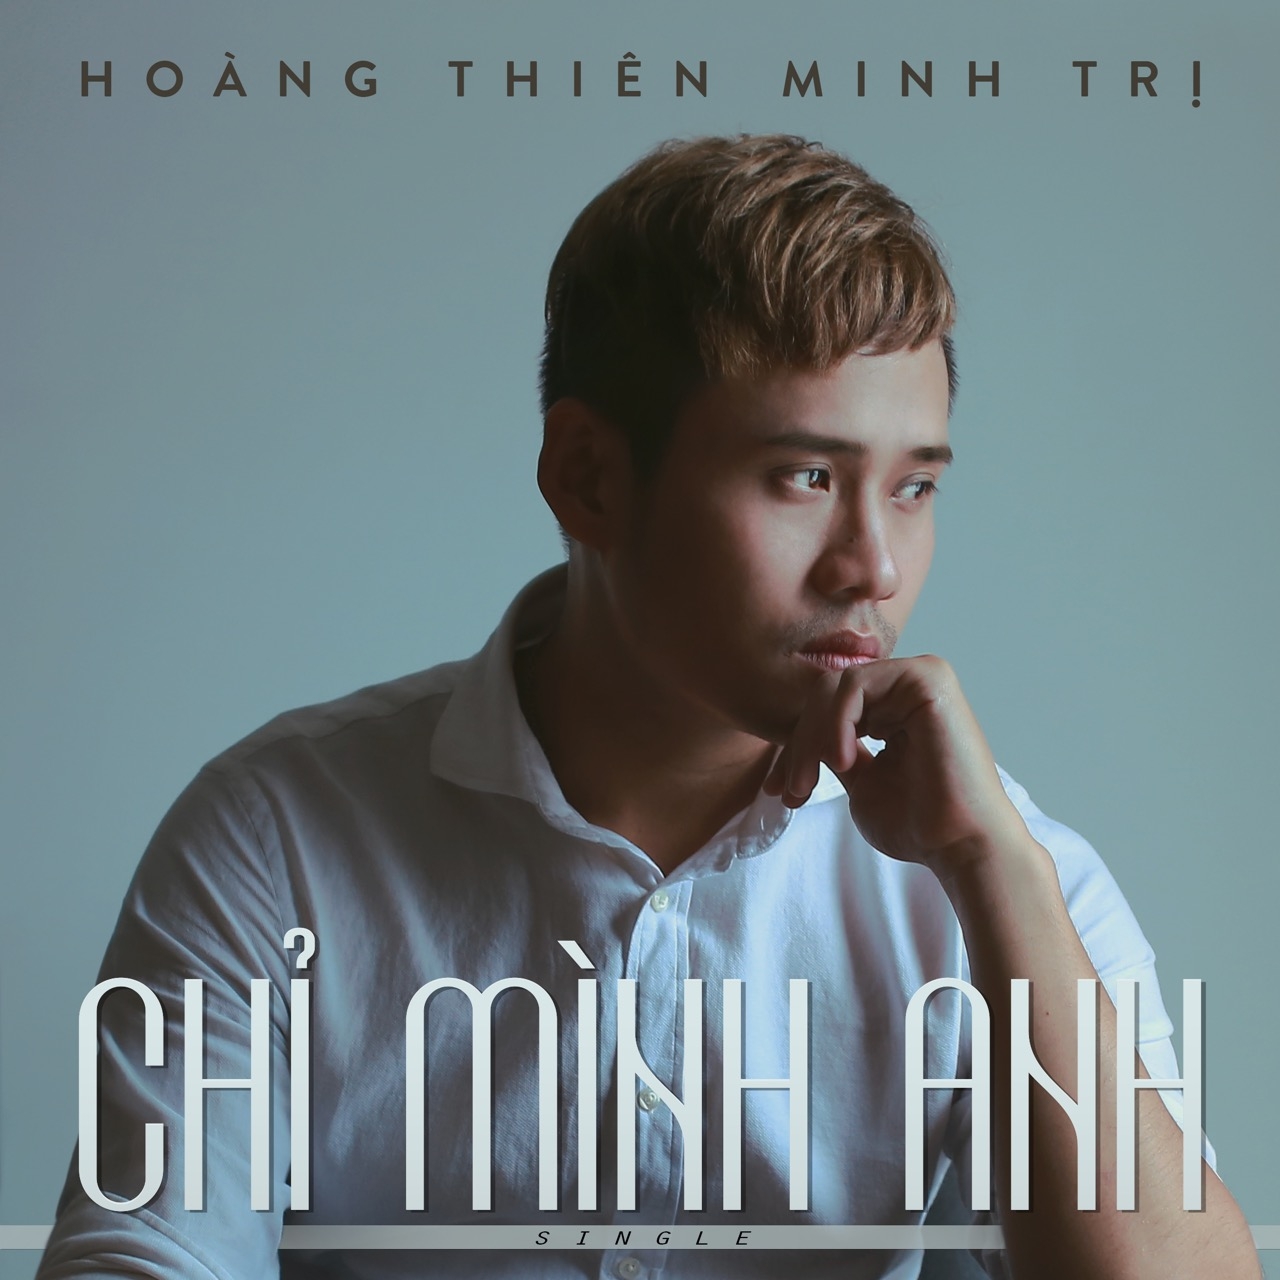 HOANG THIEN MINH TRI - CHI MINH ANH